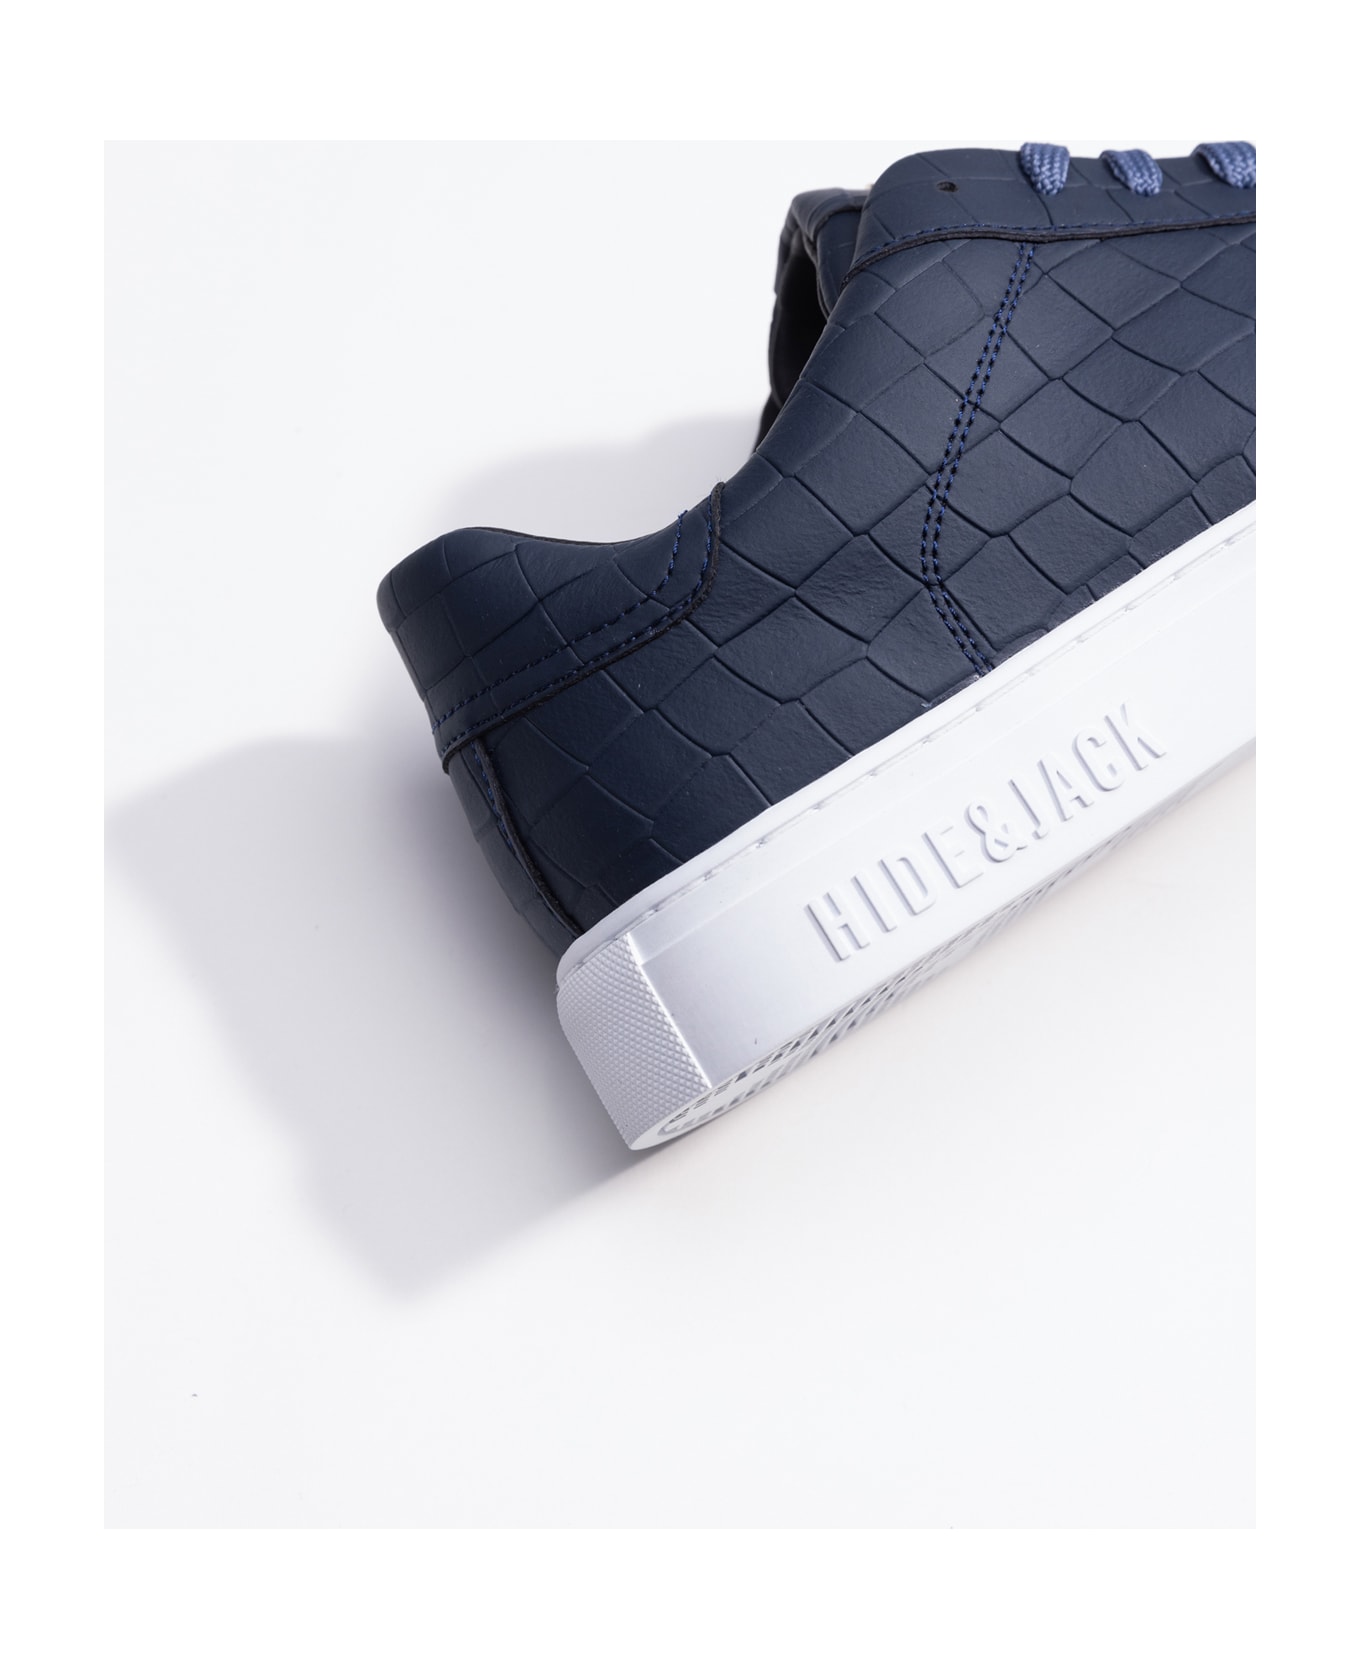 Hide&Jack Low Top Sneaker - Essence Blue White